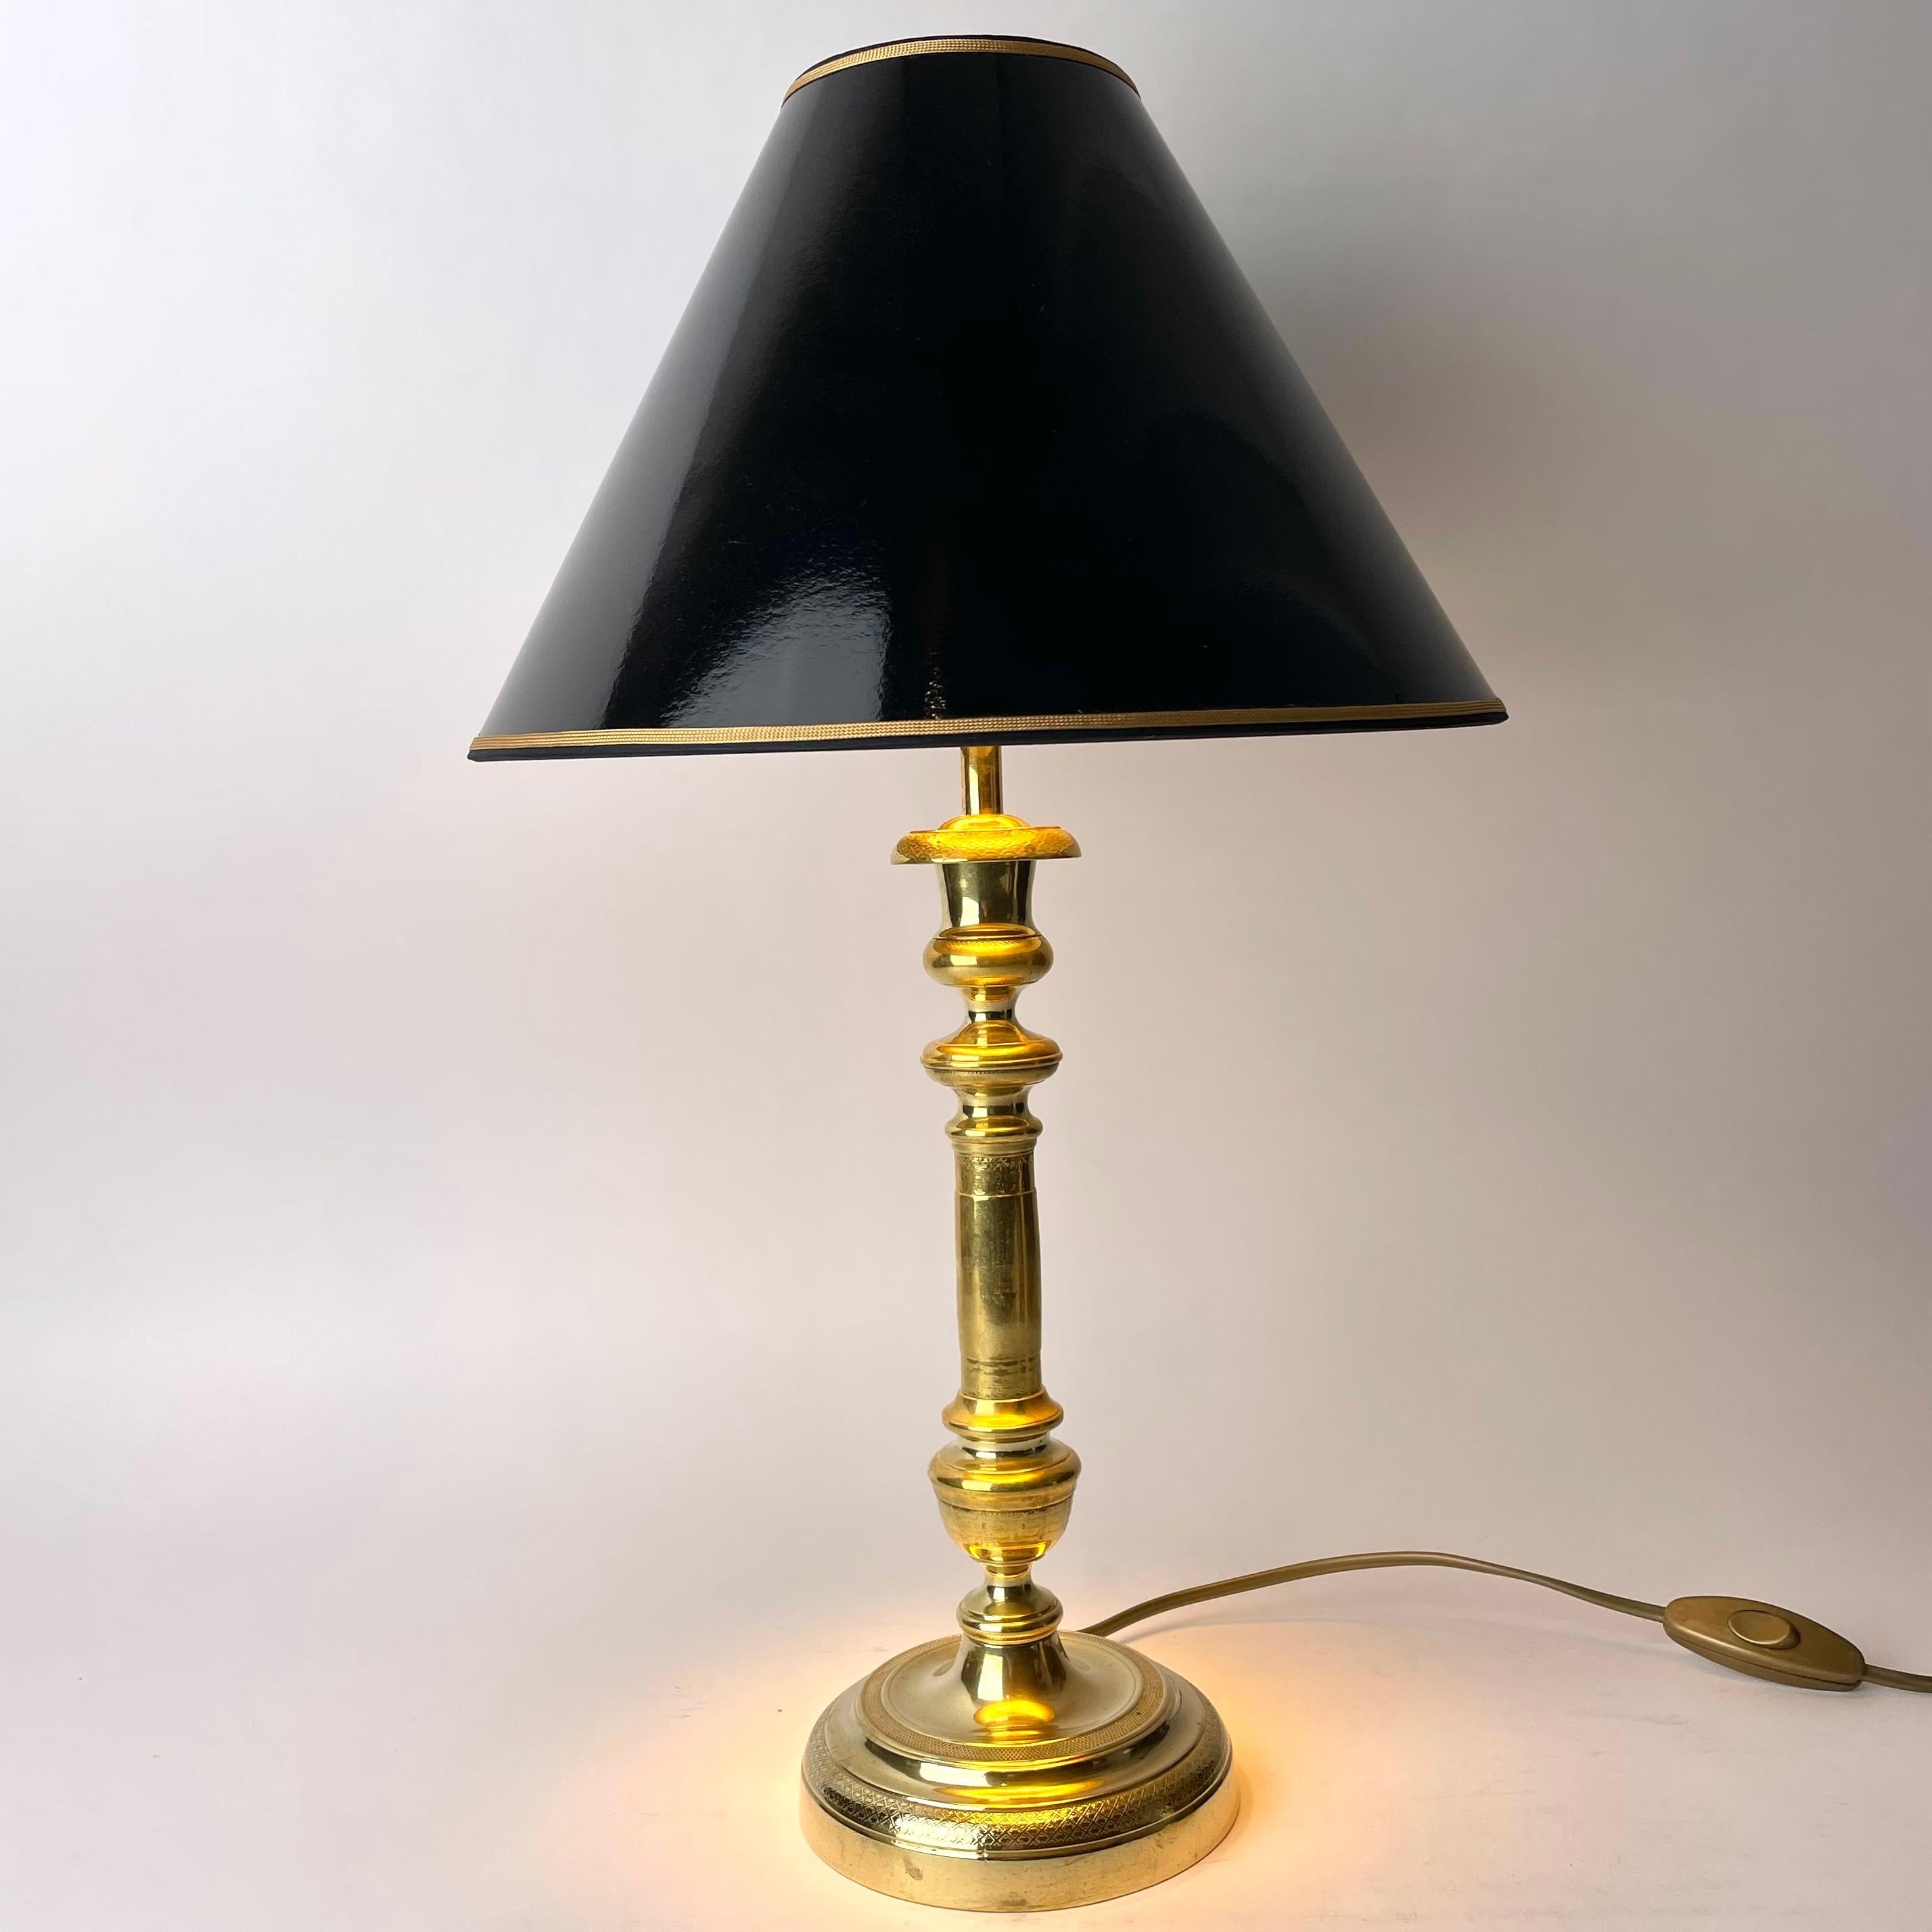 Schöne Tischlampe, ursprünglich ein Empire-Kerzenleuchter aus Bronze aus Frankreich in den 1820er Jahren.

Neu verkabelte Elektrizität 

Neue Lampenschirme aus schwarzem Lack mit Vergoldung auf der Innenseite, die ein gemütliches Licht